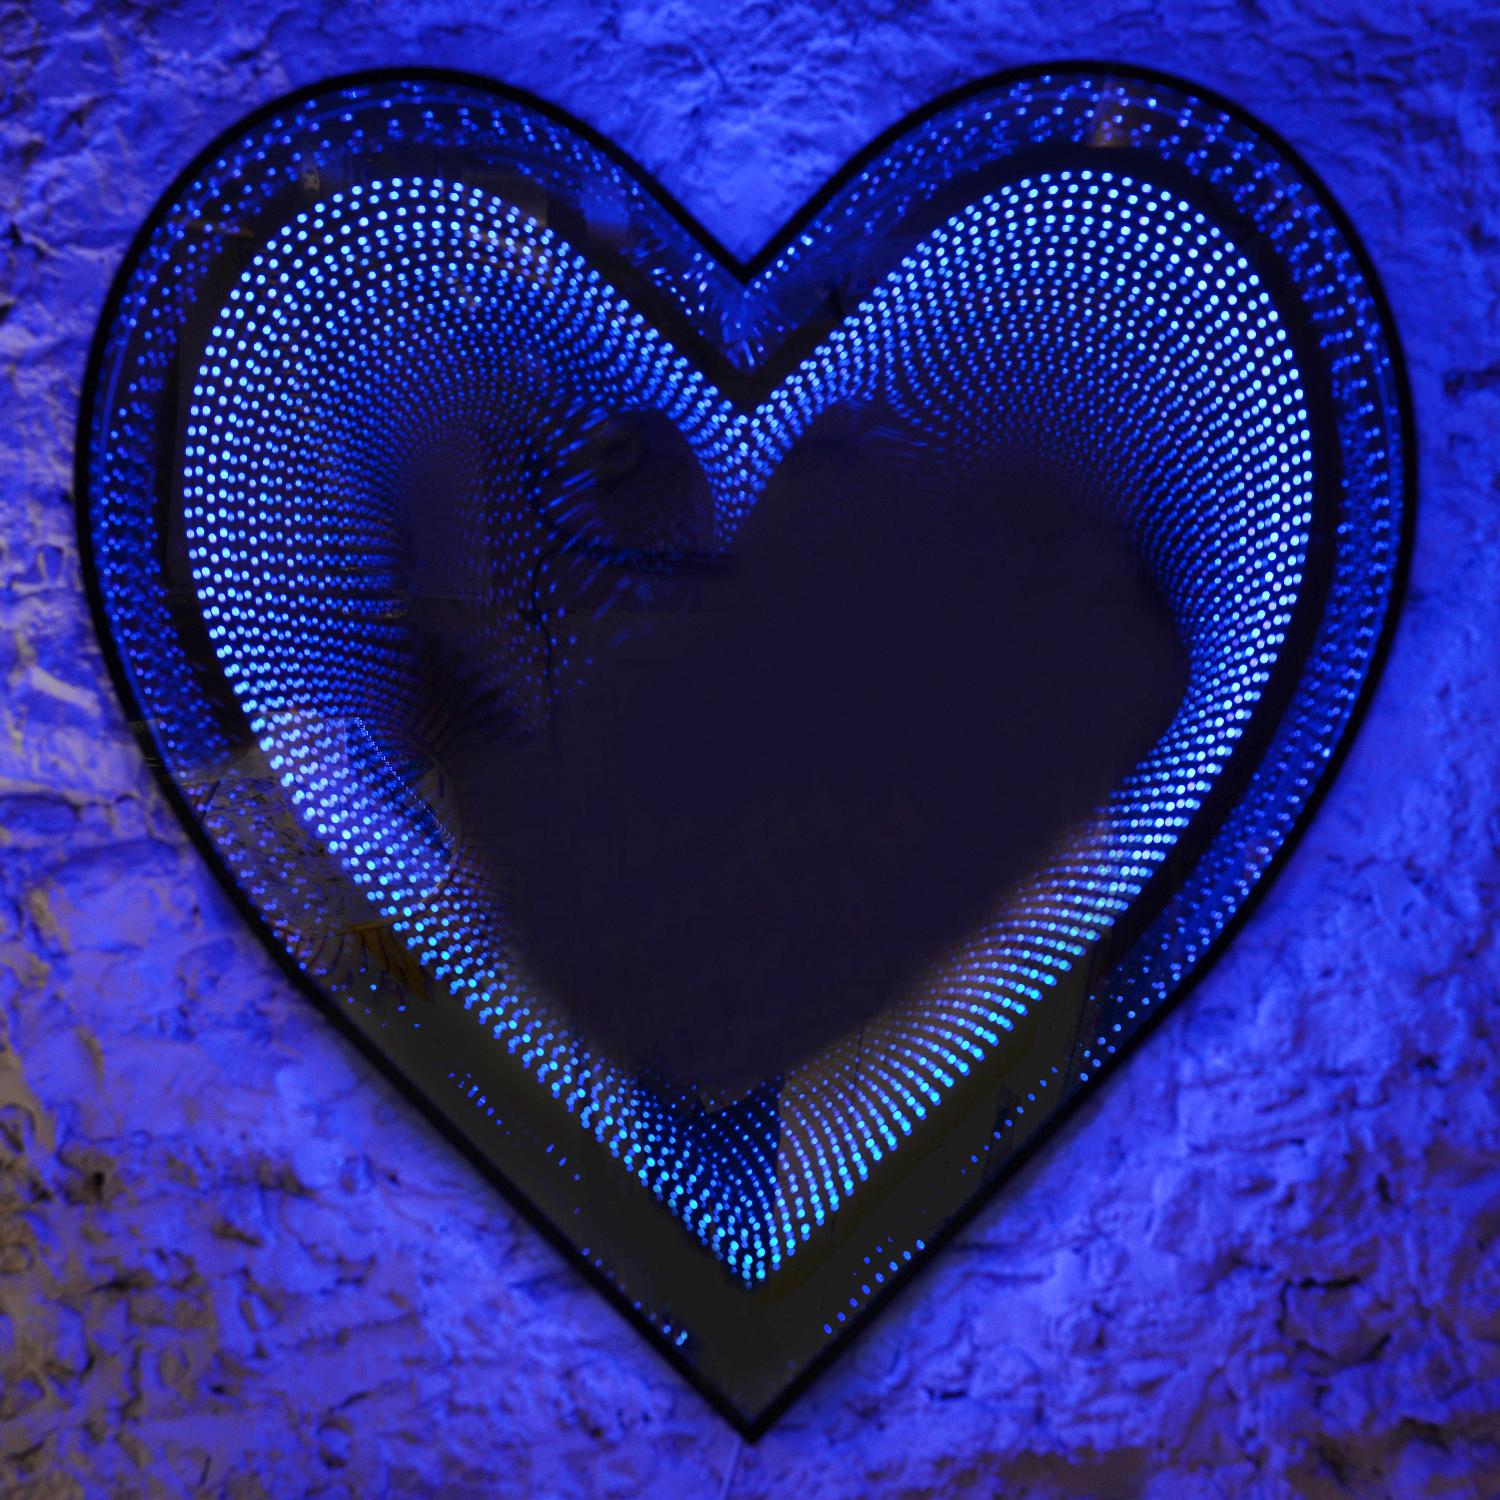 Mirror By Heart mit LED-Leuchten und verspiegeltem Glas 
und Plexiglas, die einen unendlichen Spiegeleffekt durch 
eine Herzform. Mit Farbwechseloption mit Fernbedienung. 
Limitierte Auflage von 15 Stück von Raphael Fenice.